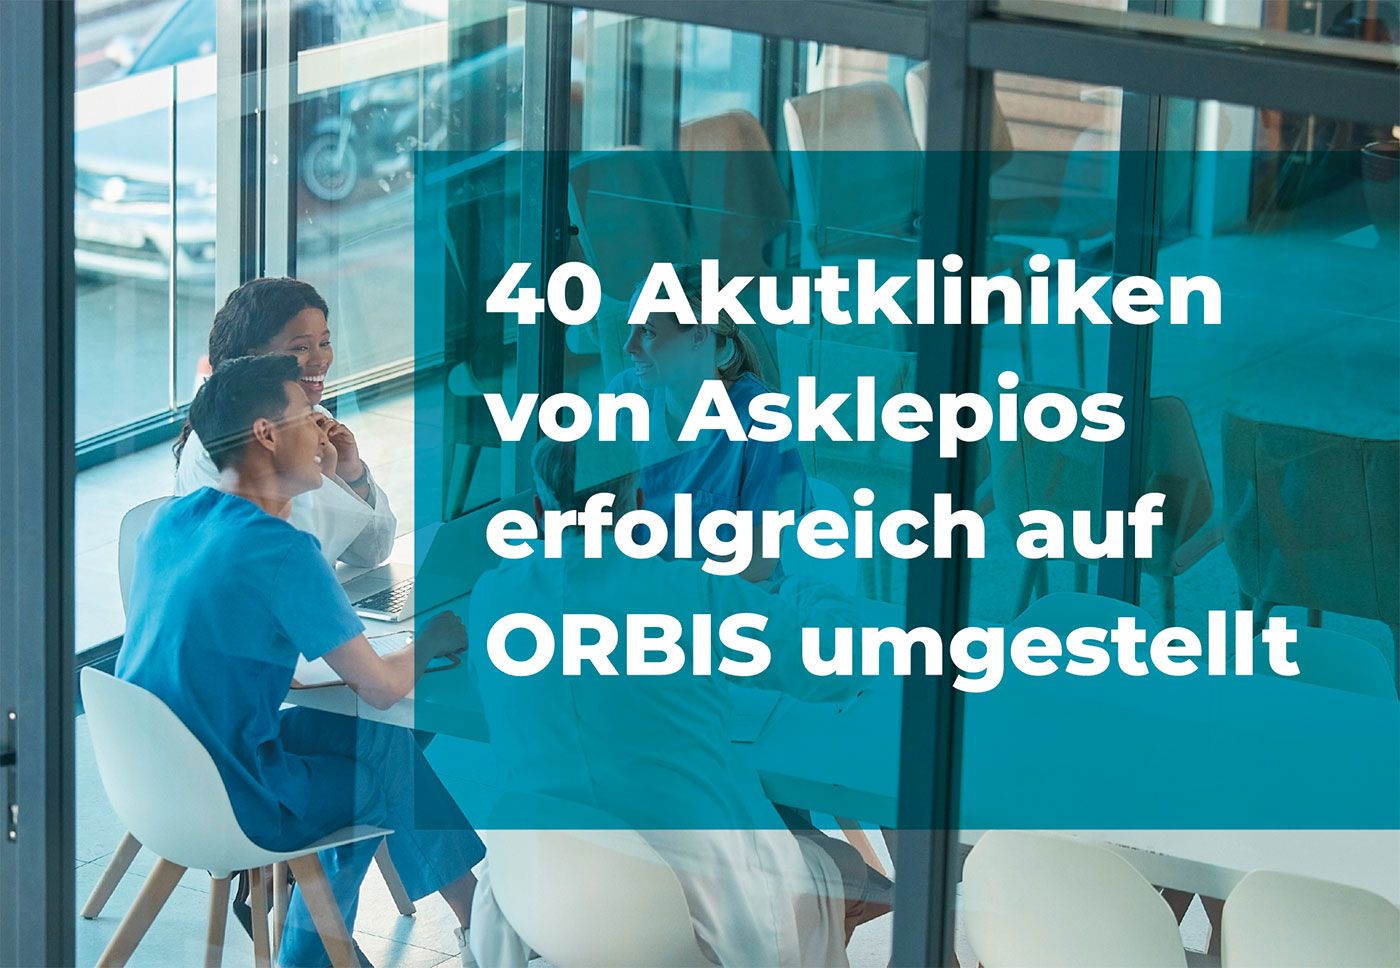 40 Akutkliniken von Asklepios erfolgreich auf ORBIS umgestellt